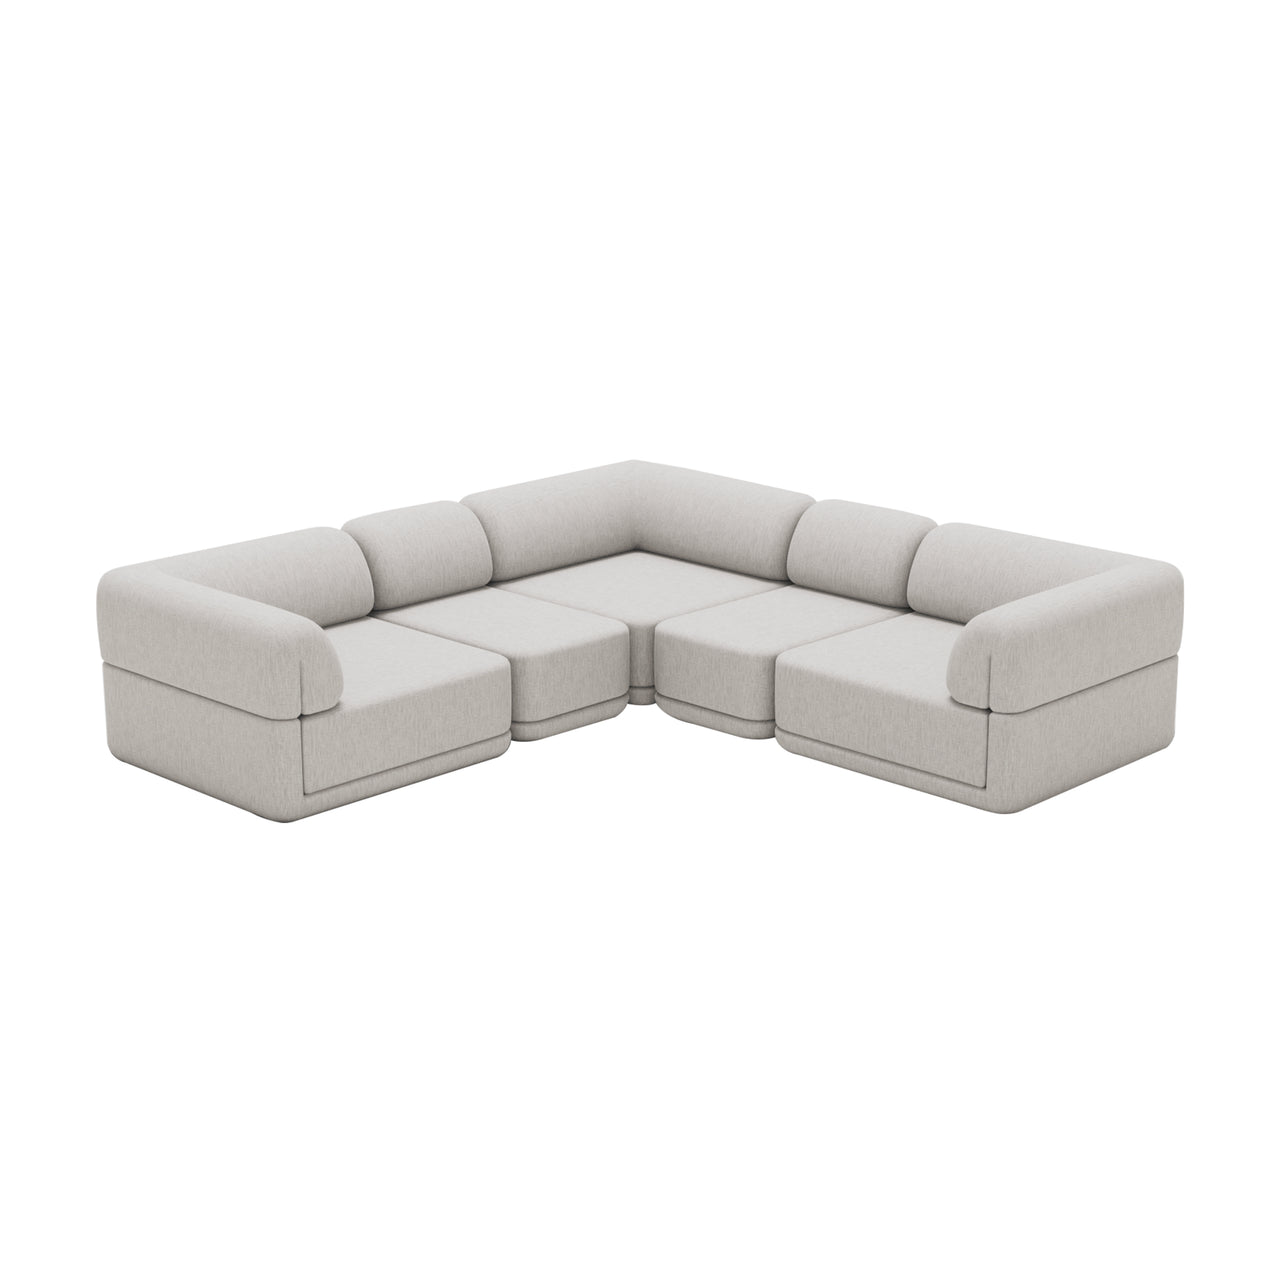 Cube Modular Sofa: Slim + Configuration 4 + Chenille Snow White